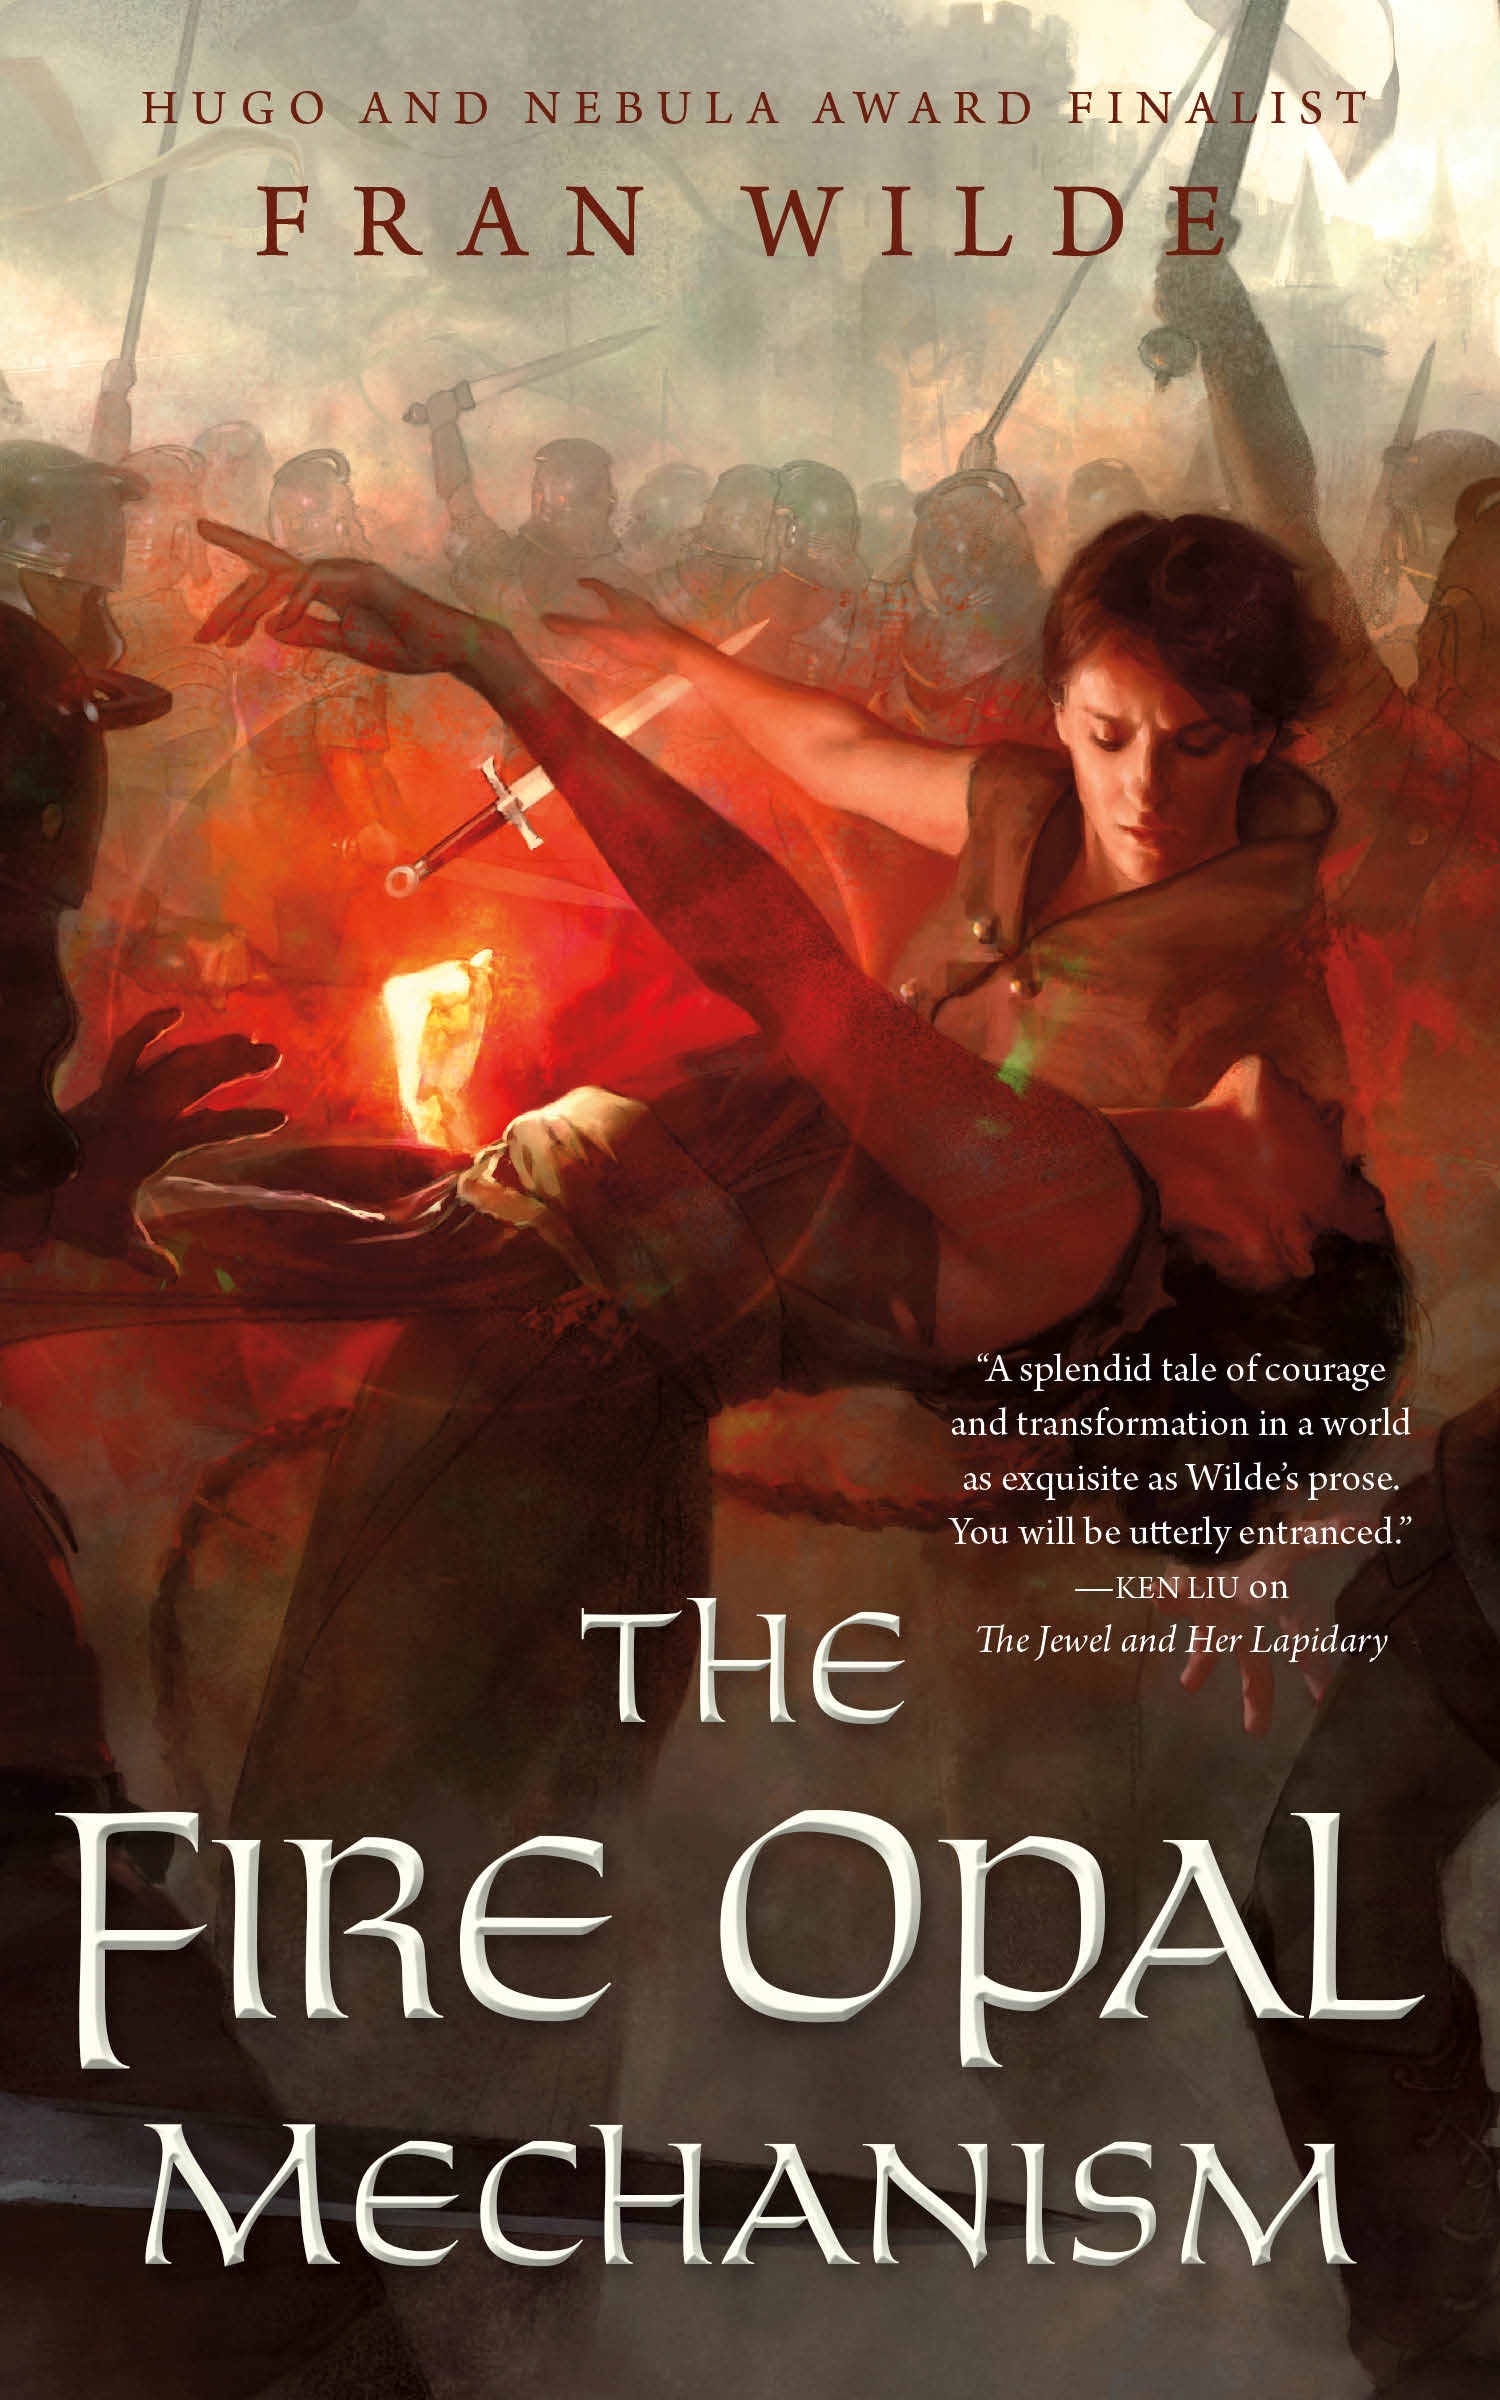 The Fire Opal Mechanism by Fran Wilde